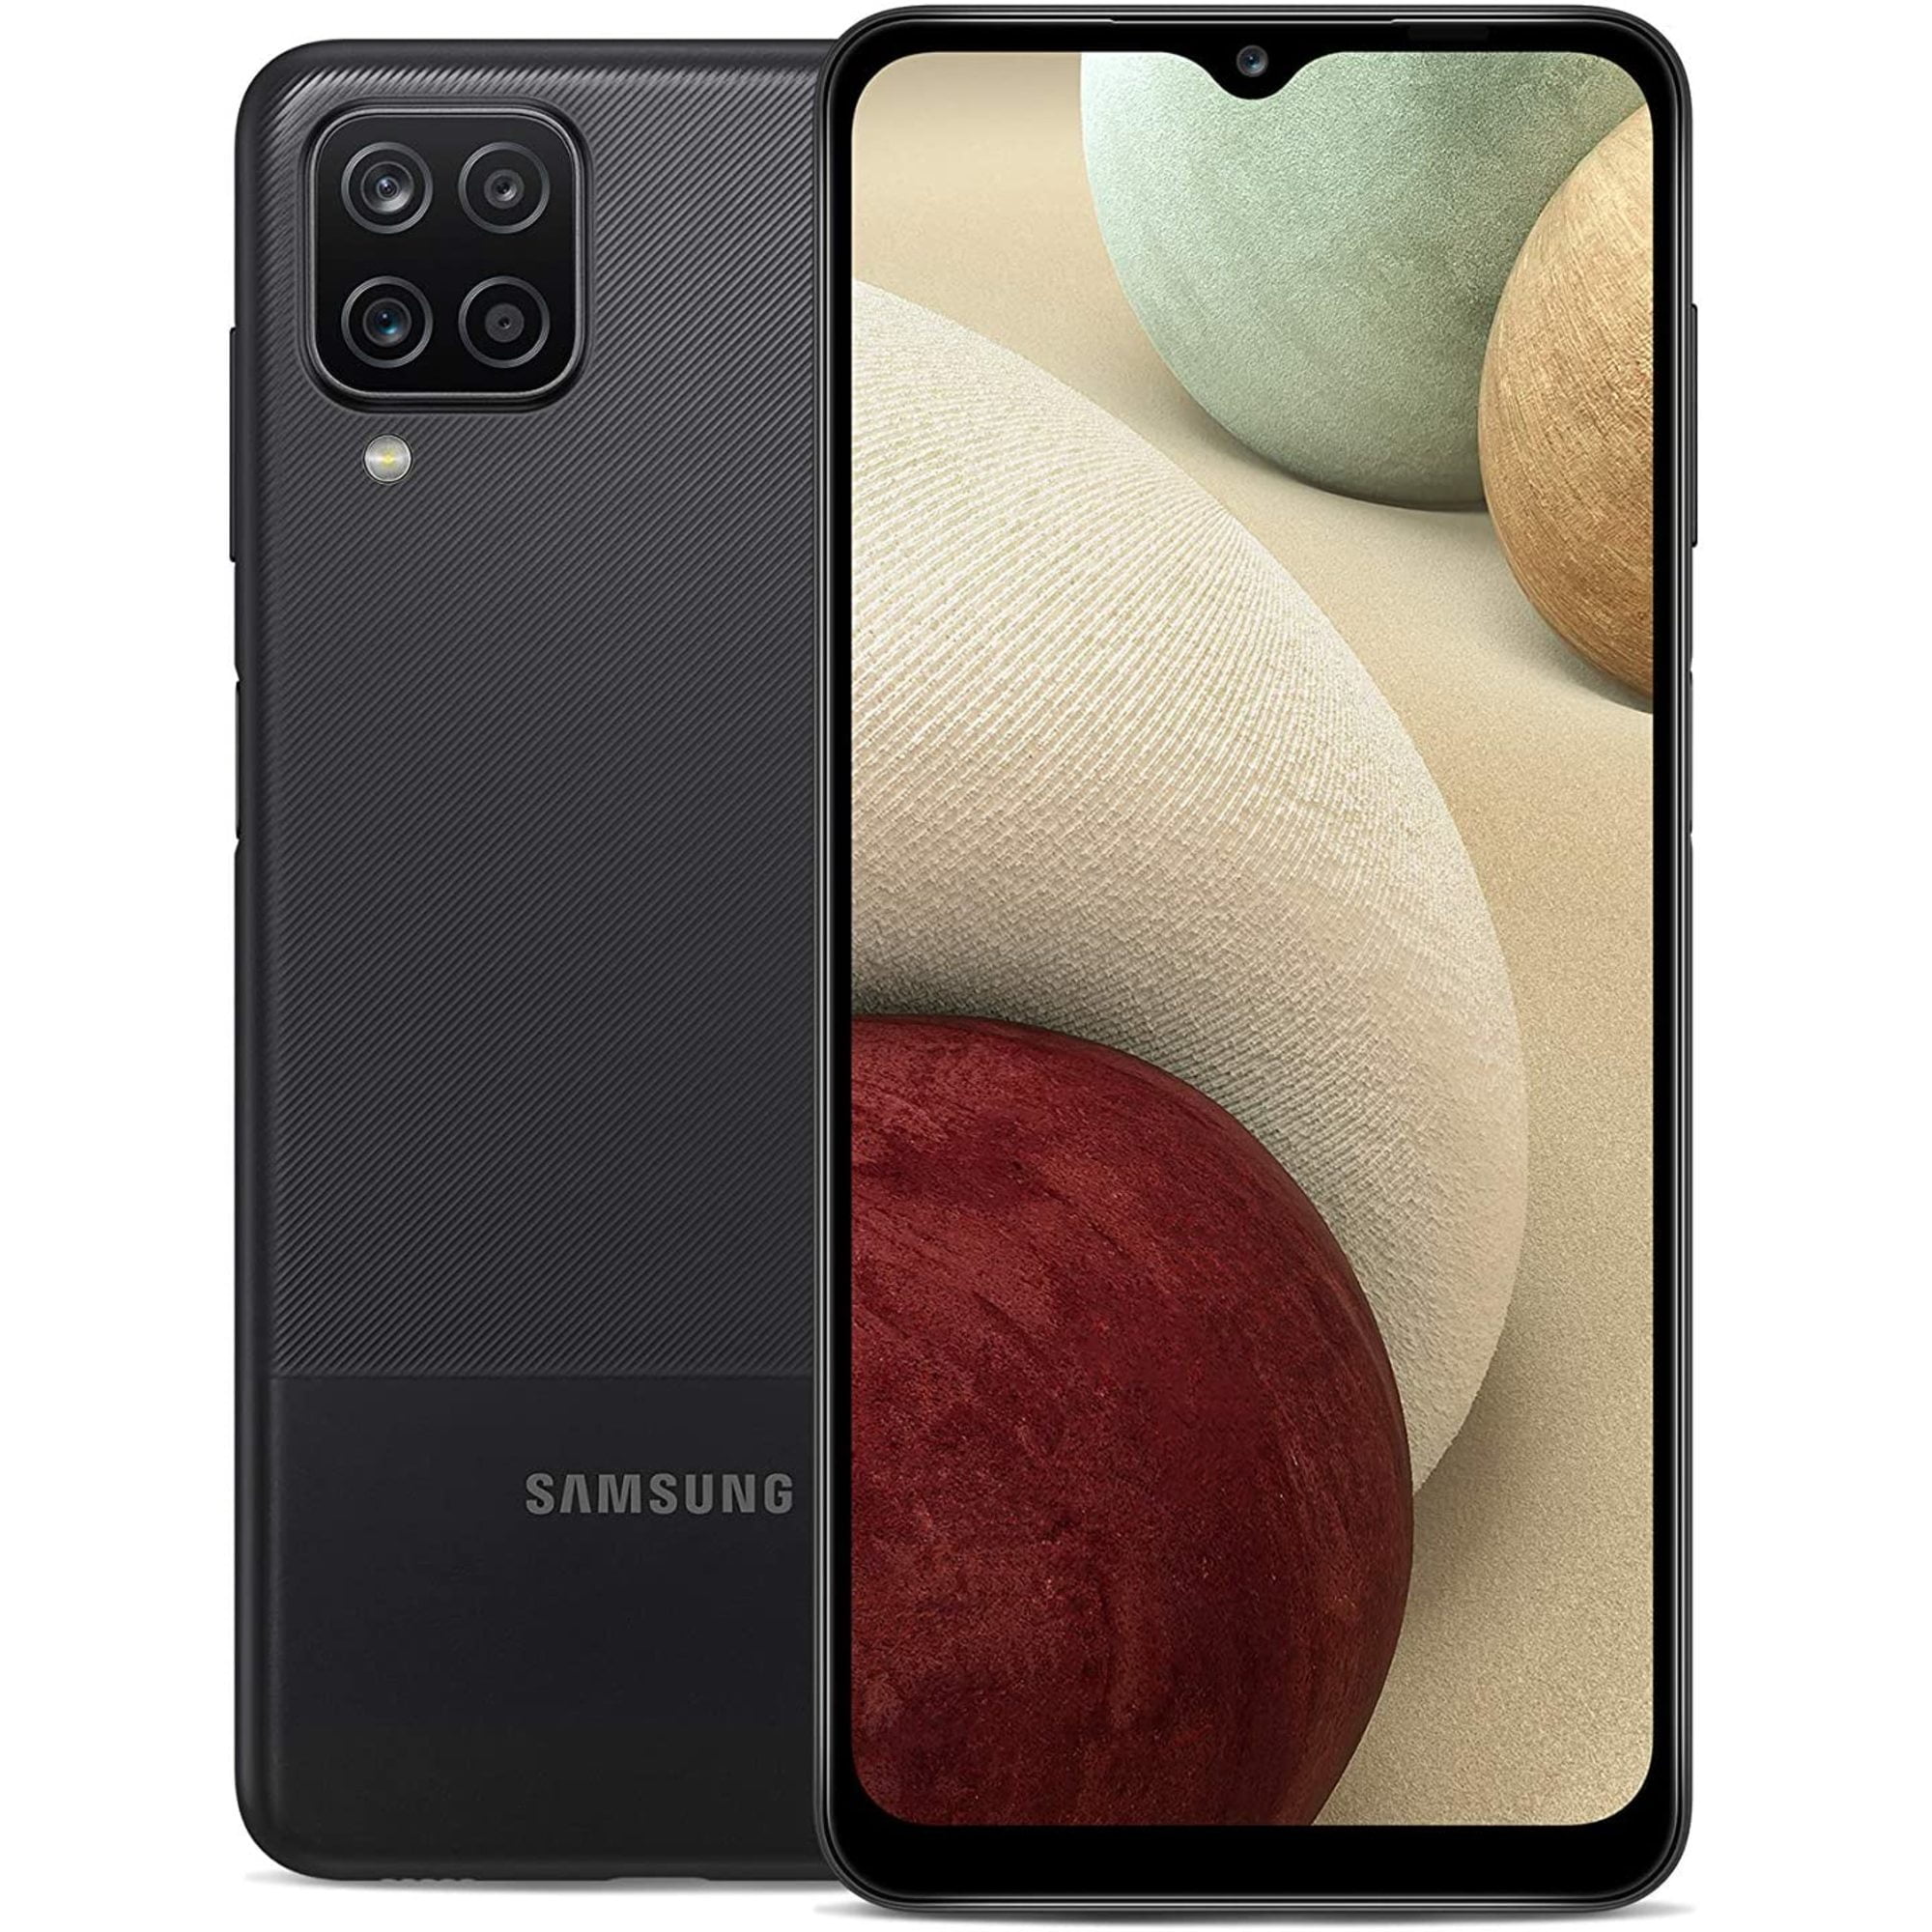 Hãy khám phá tin tức về Samsung Galaxy A12 A125M 64GB - một trong những điện thoại thông minh mới nhất của Samsung với bộ nhớ trong lớn và hiệu năng vượt trội. Hình ảnh chi tiết sẽ giúp bạn đưa ra quyết định chính xác. 